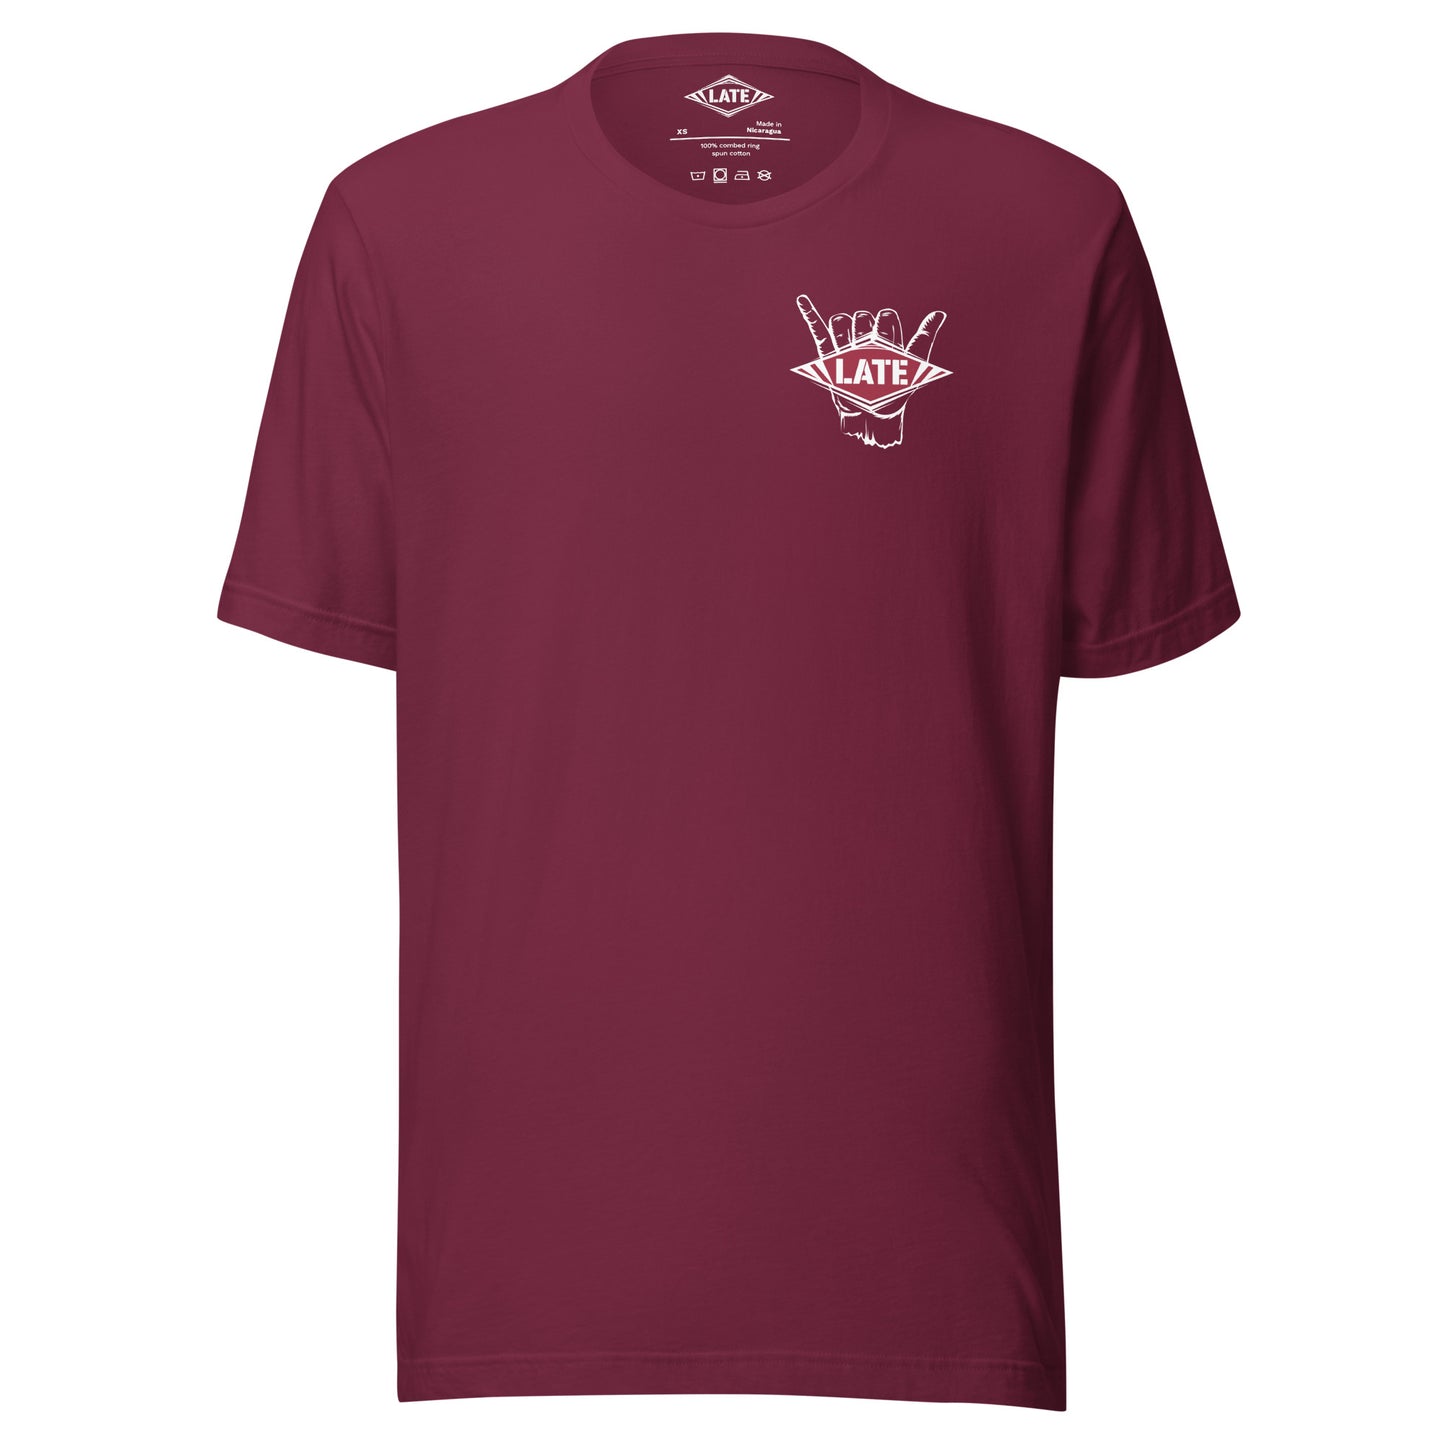 T-Shirt surfing main shaka avec le logo Late face avant t-shirt unisex couleur bordeaux